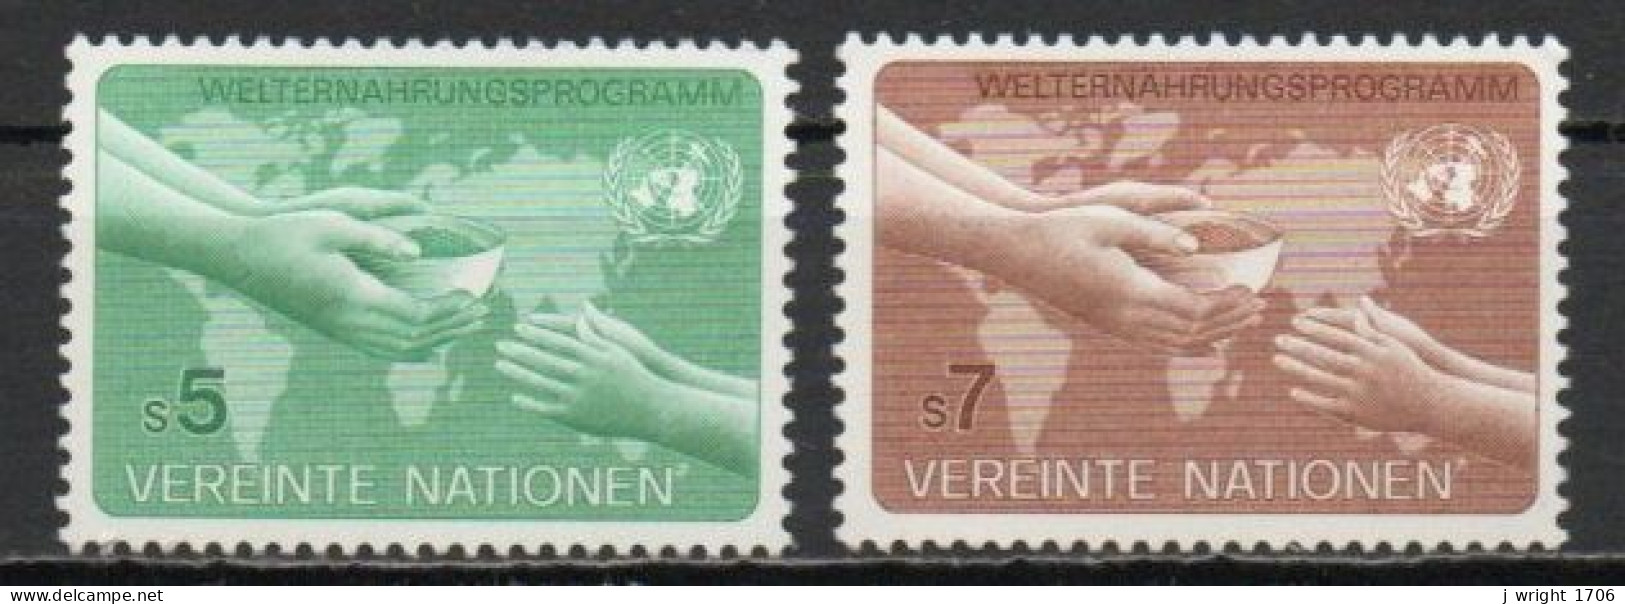 UN/Vienna, 1983, World Food Programme, Set, MNH - Ongebruikt